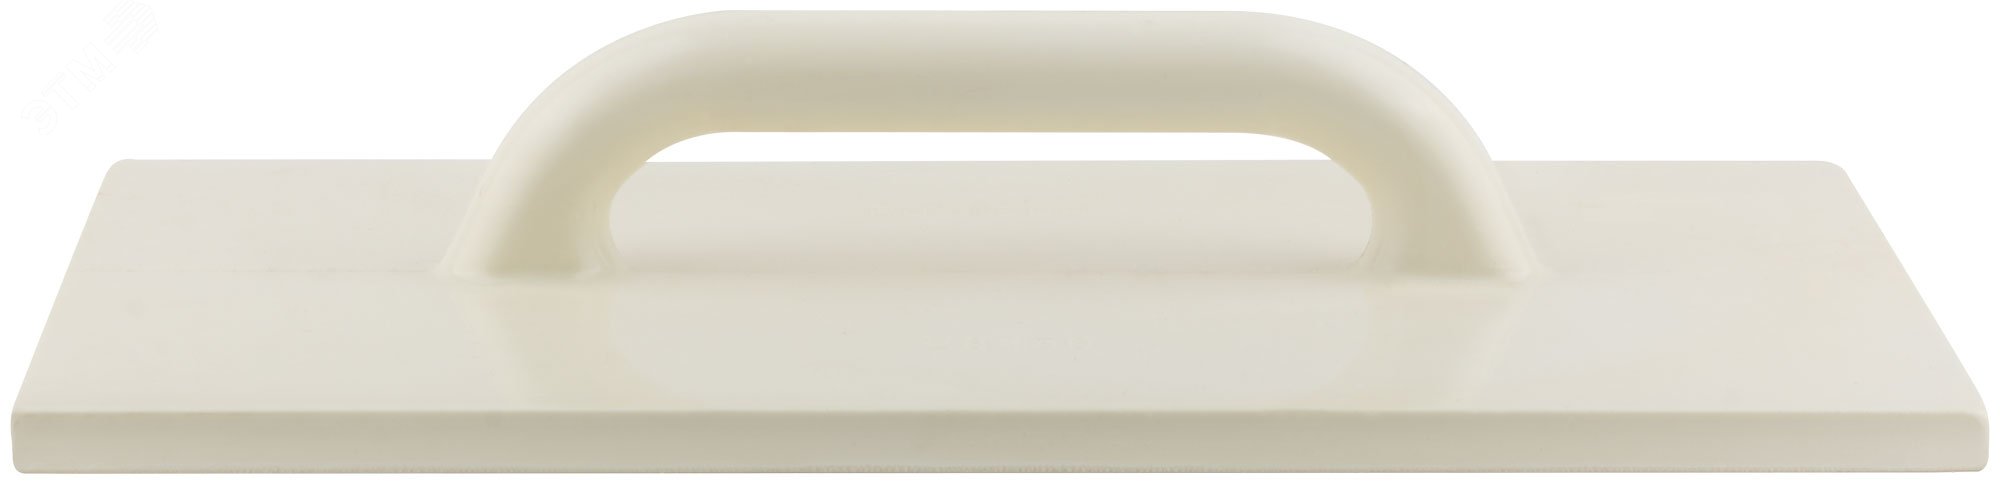 Терка полиуретановая желтая Профи 280х500 мм 05630 РОС - превью 2